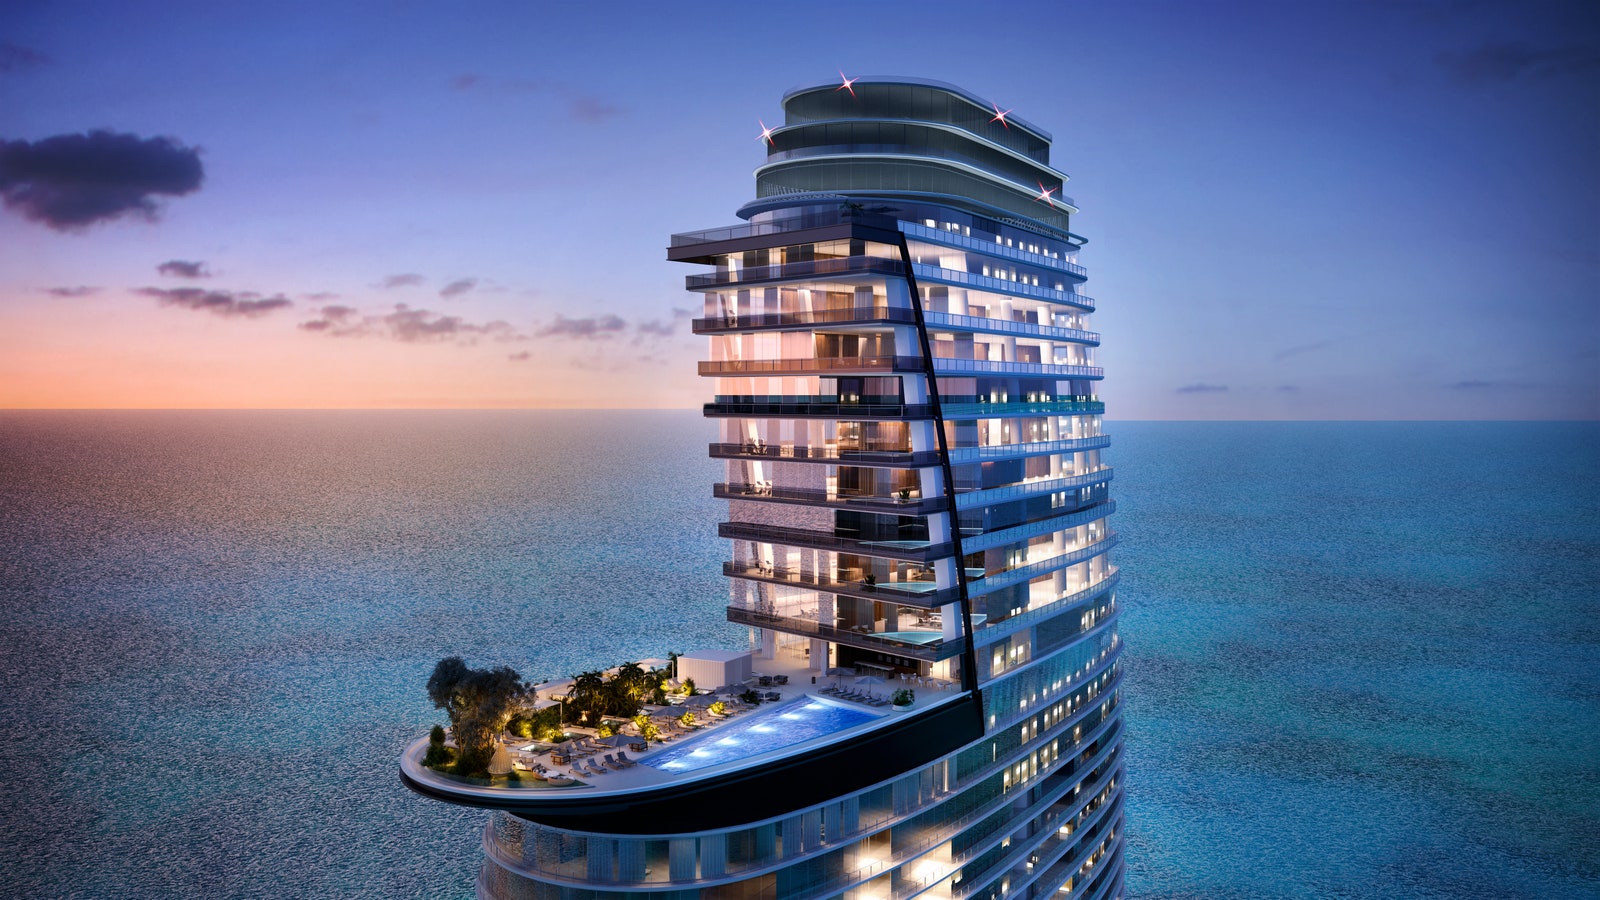 La terrasse de la piscine du 55e étage prévue pour les résidences Aston Martin à Miami